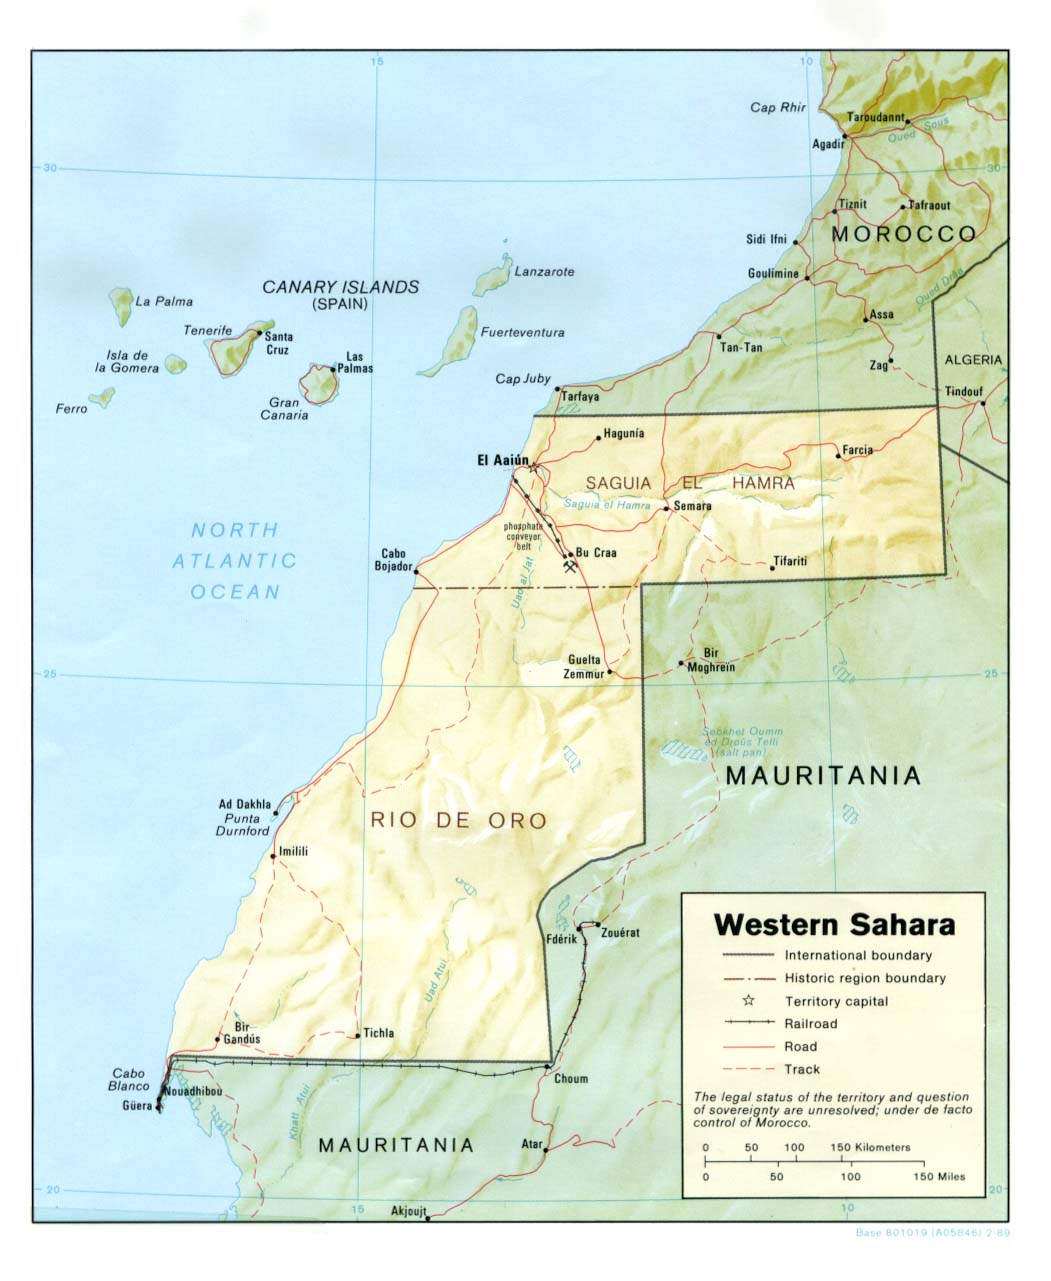 sahara-occidental-relief-carte-populationdata